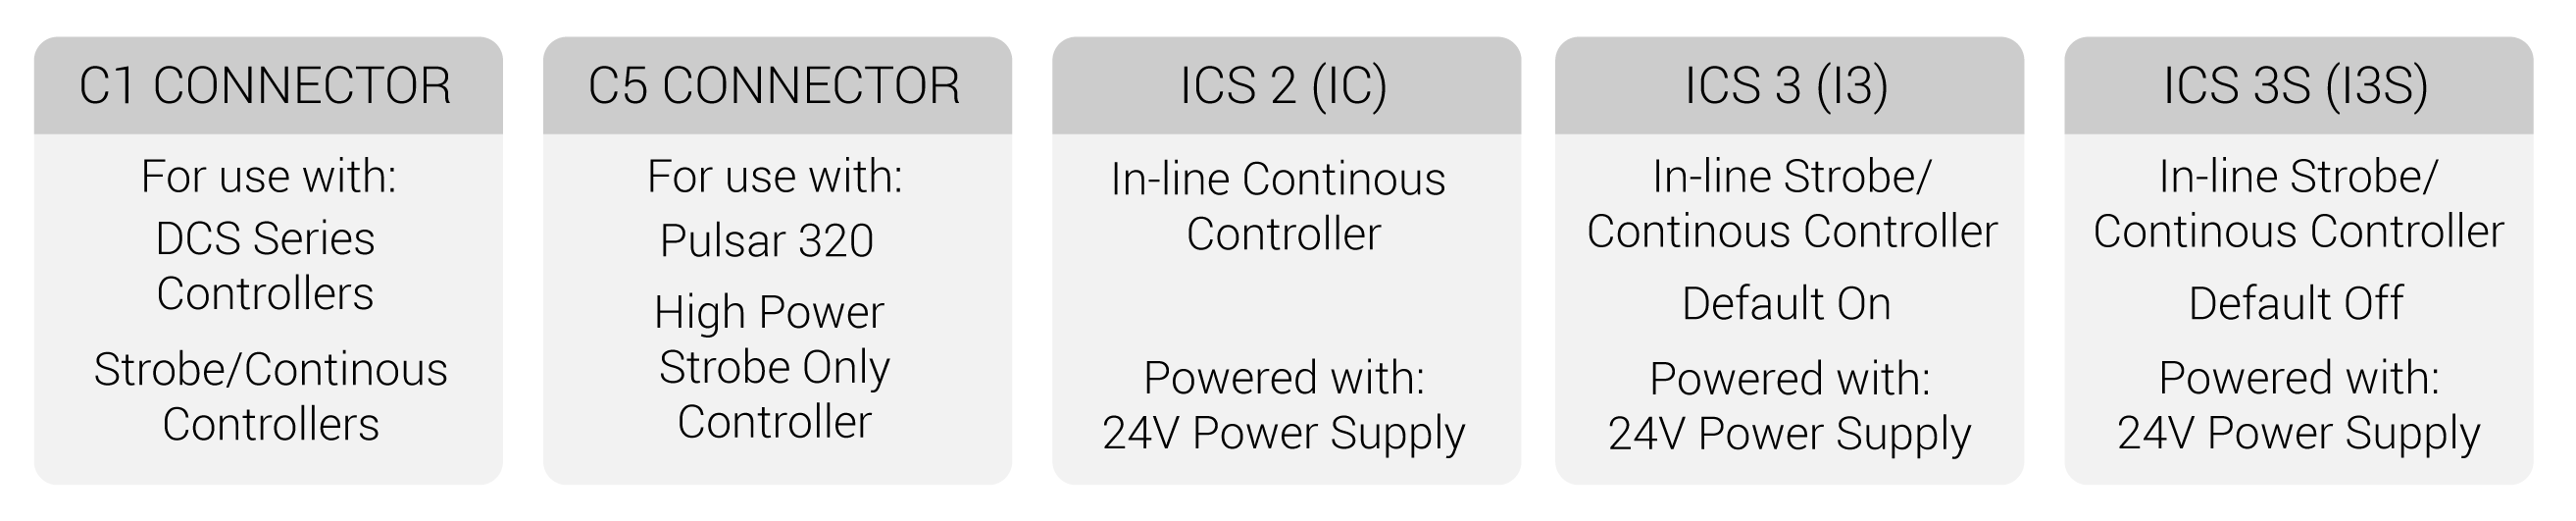 Connector Options C1 C5 ICS 2 ICS 3 ICS 3S 07.02.20Asset 6